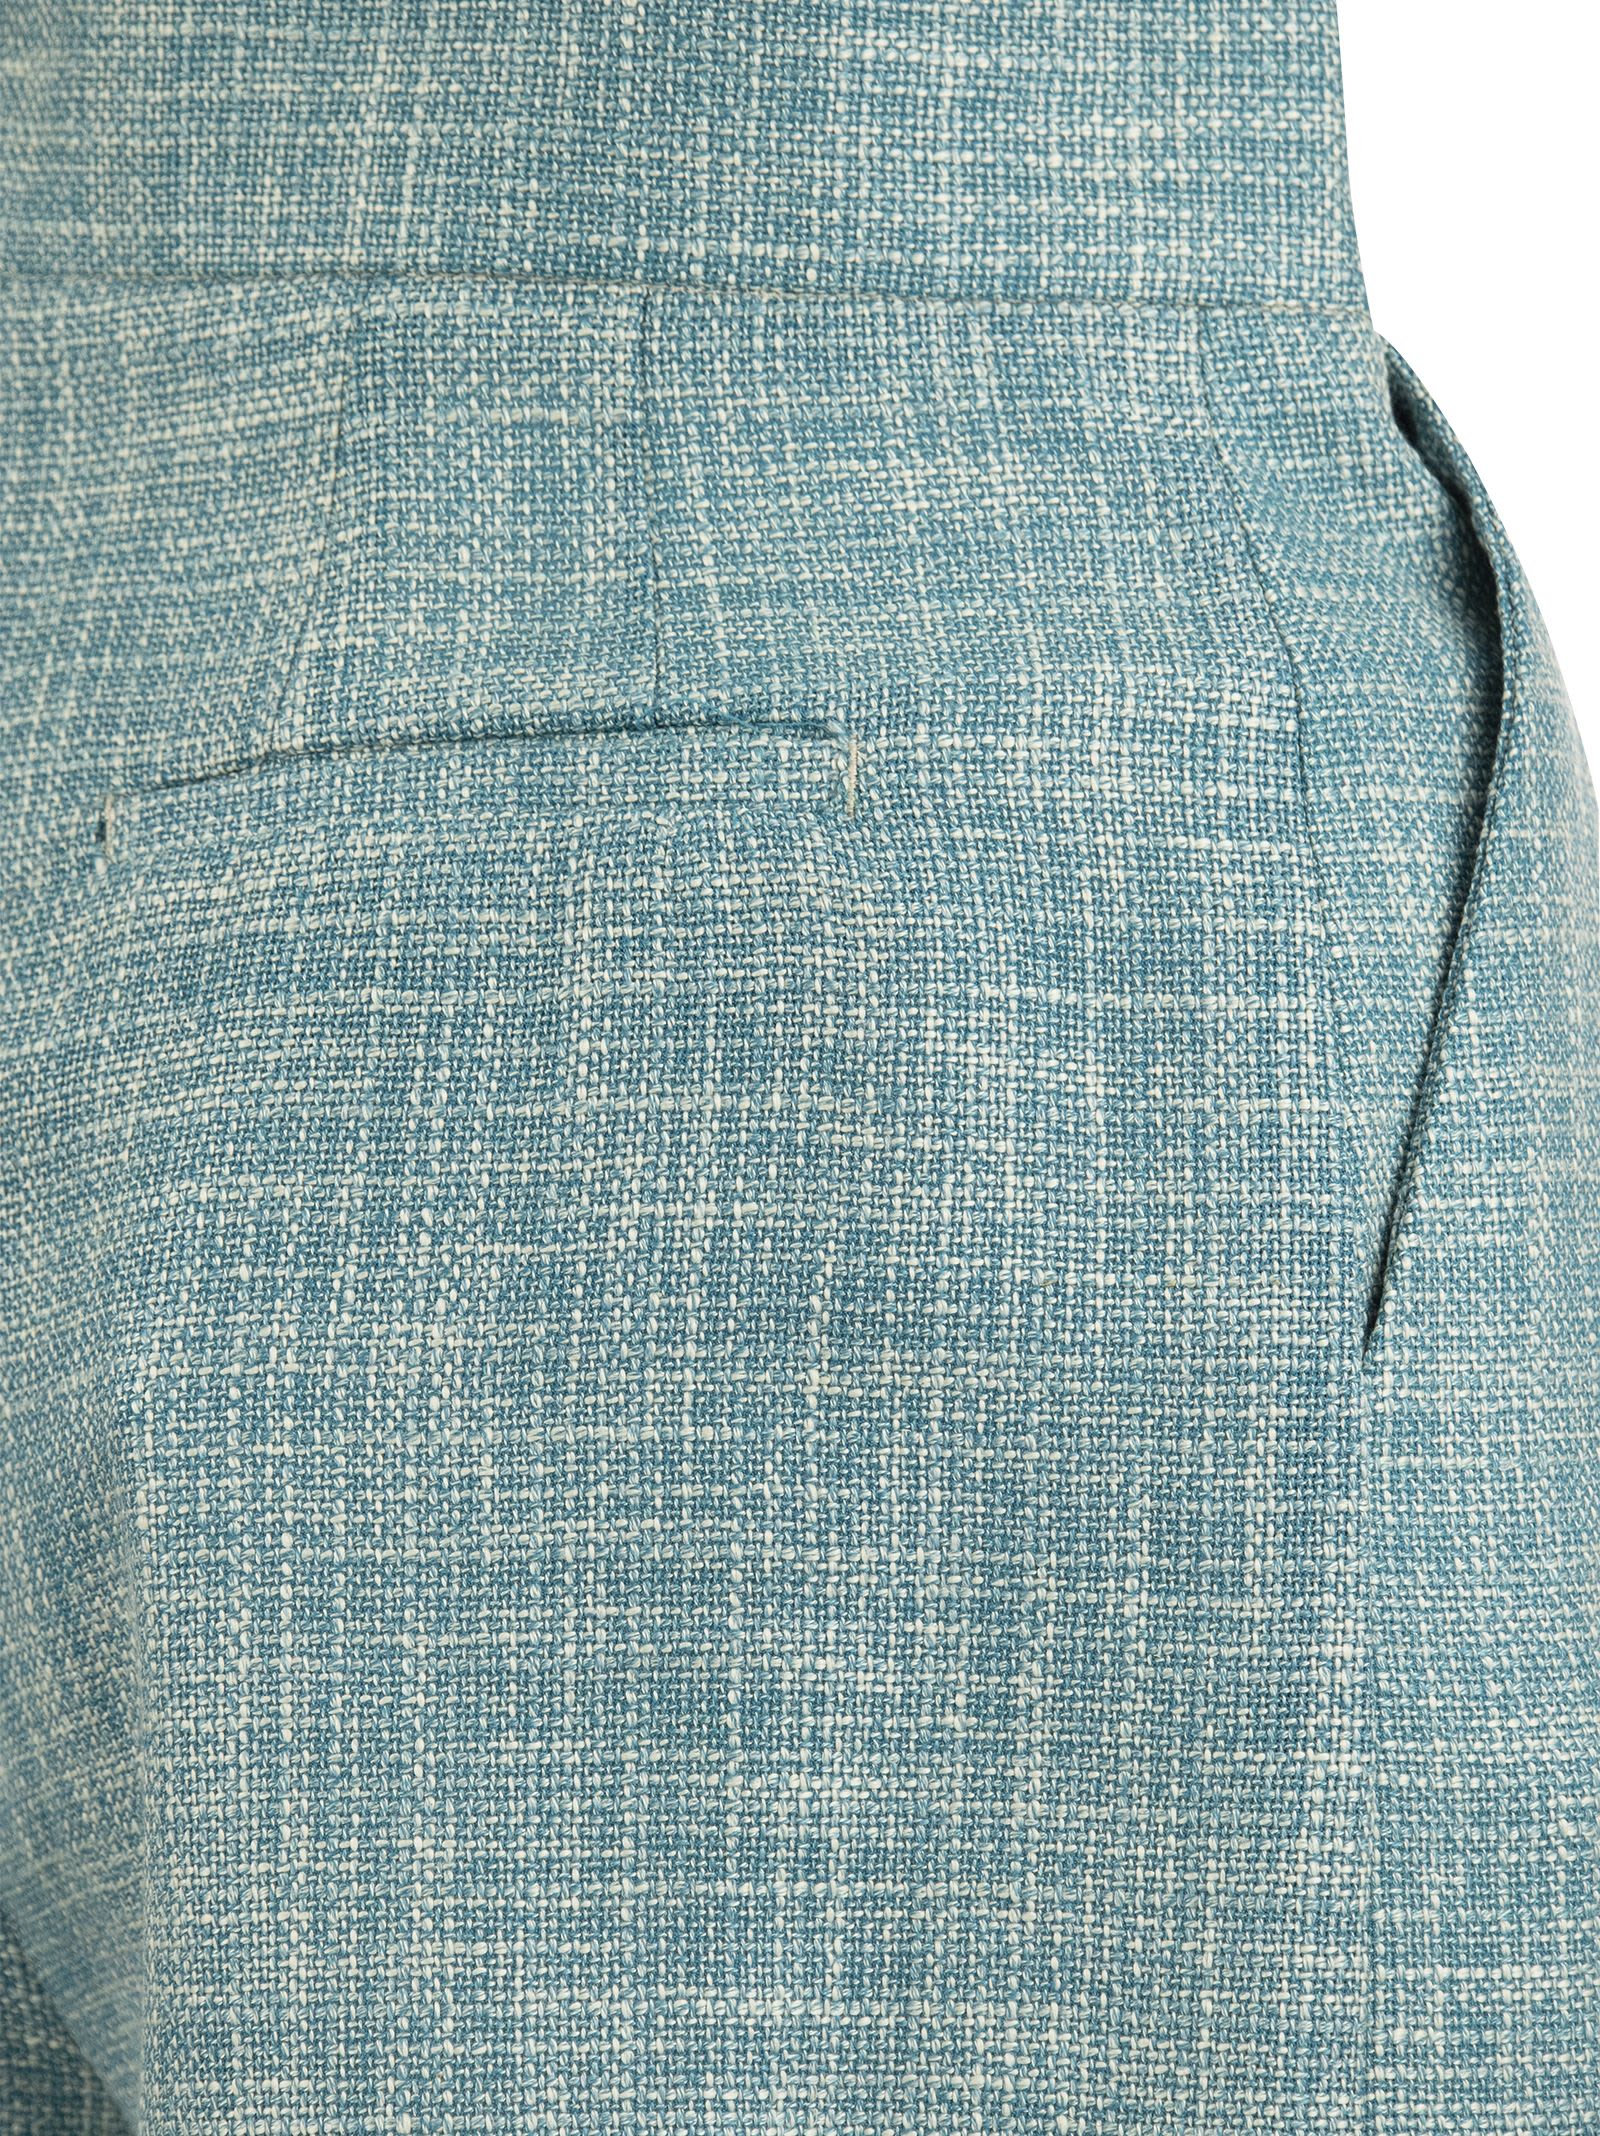 Shop Saulina High-waisted Shorts In Light Blue